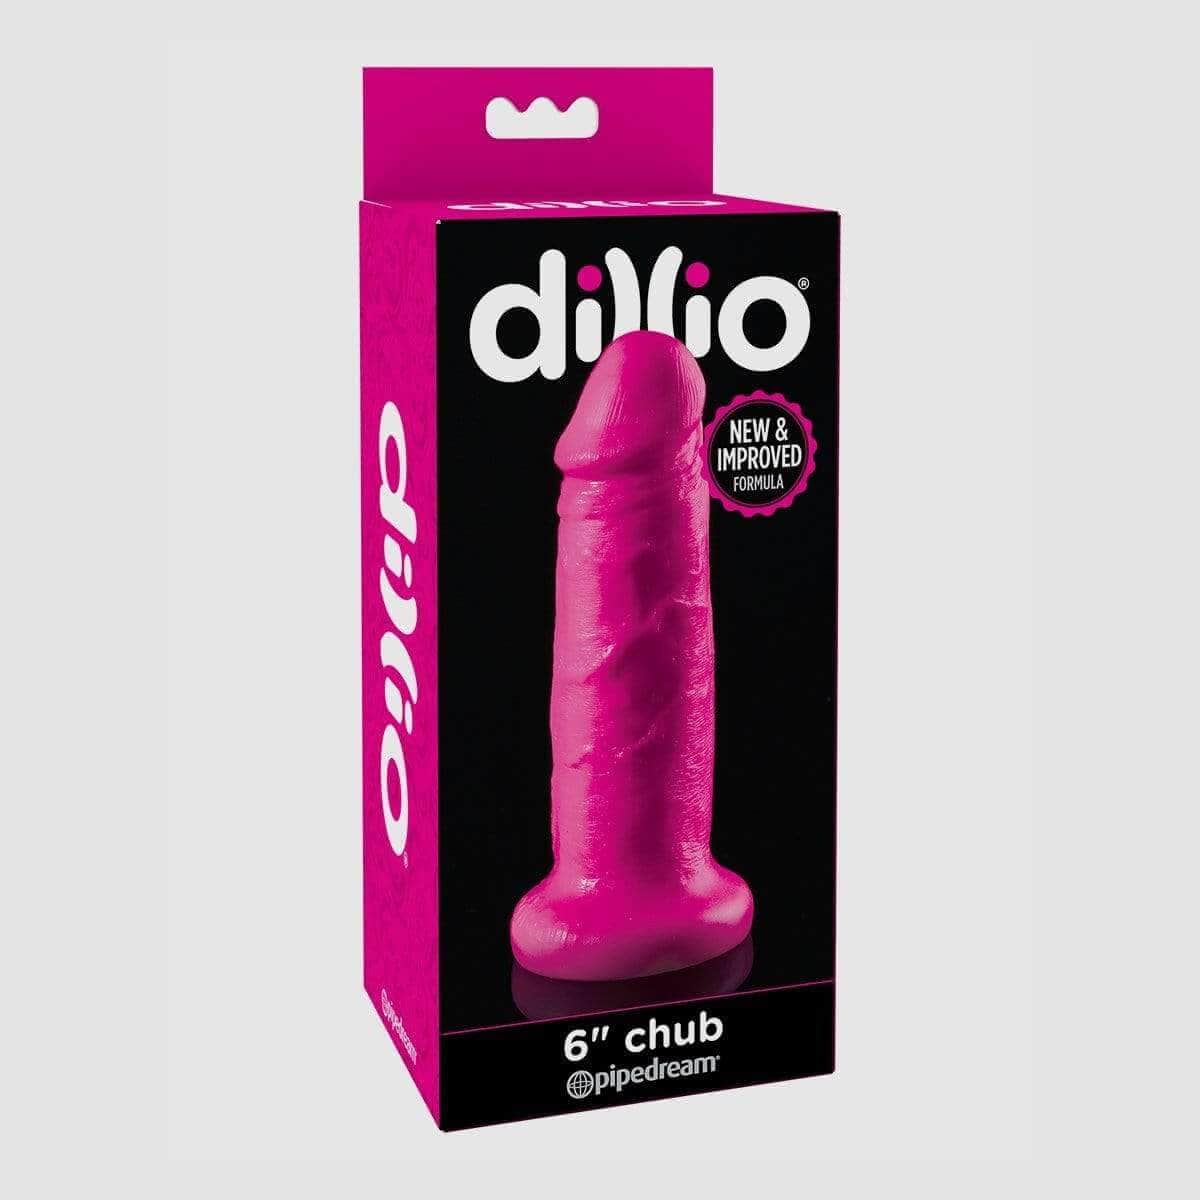 Dillio 6" Chub Dildo - Thorn & Feather Sex Toy Canada